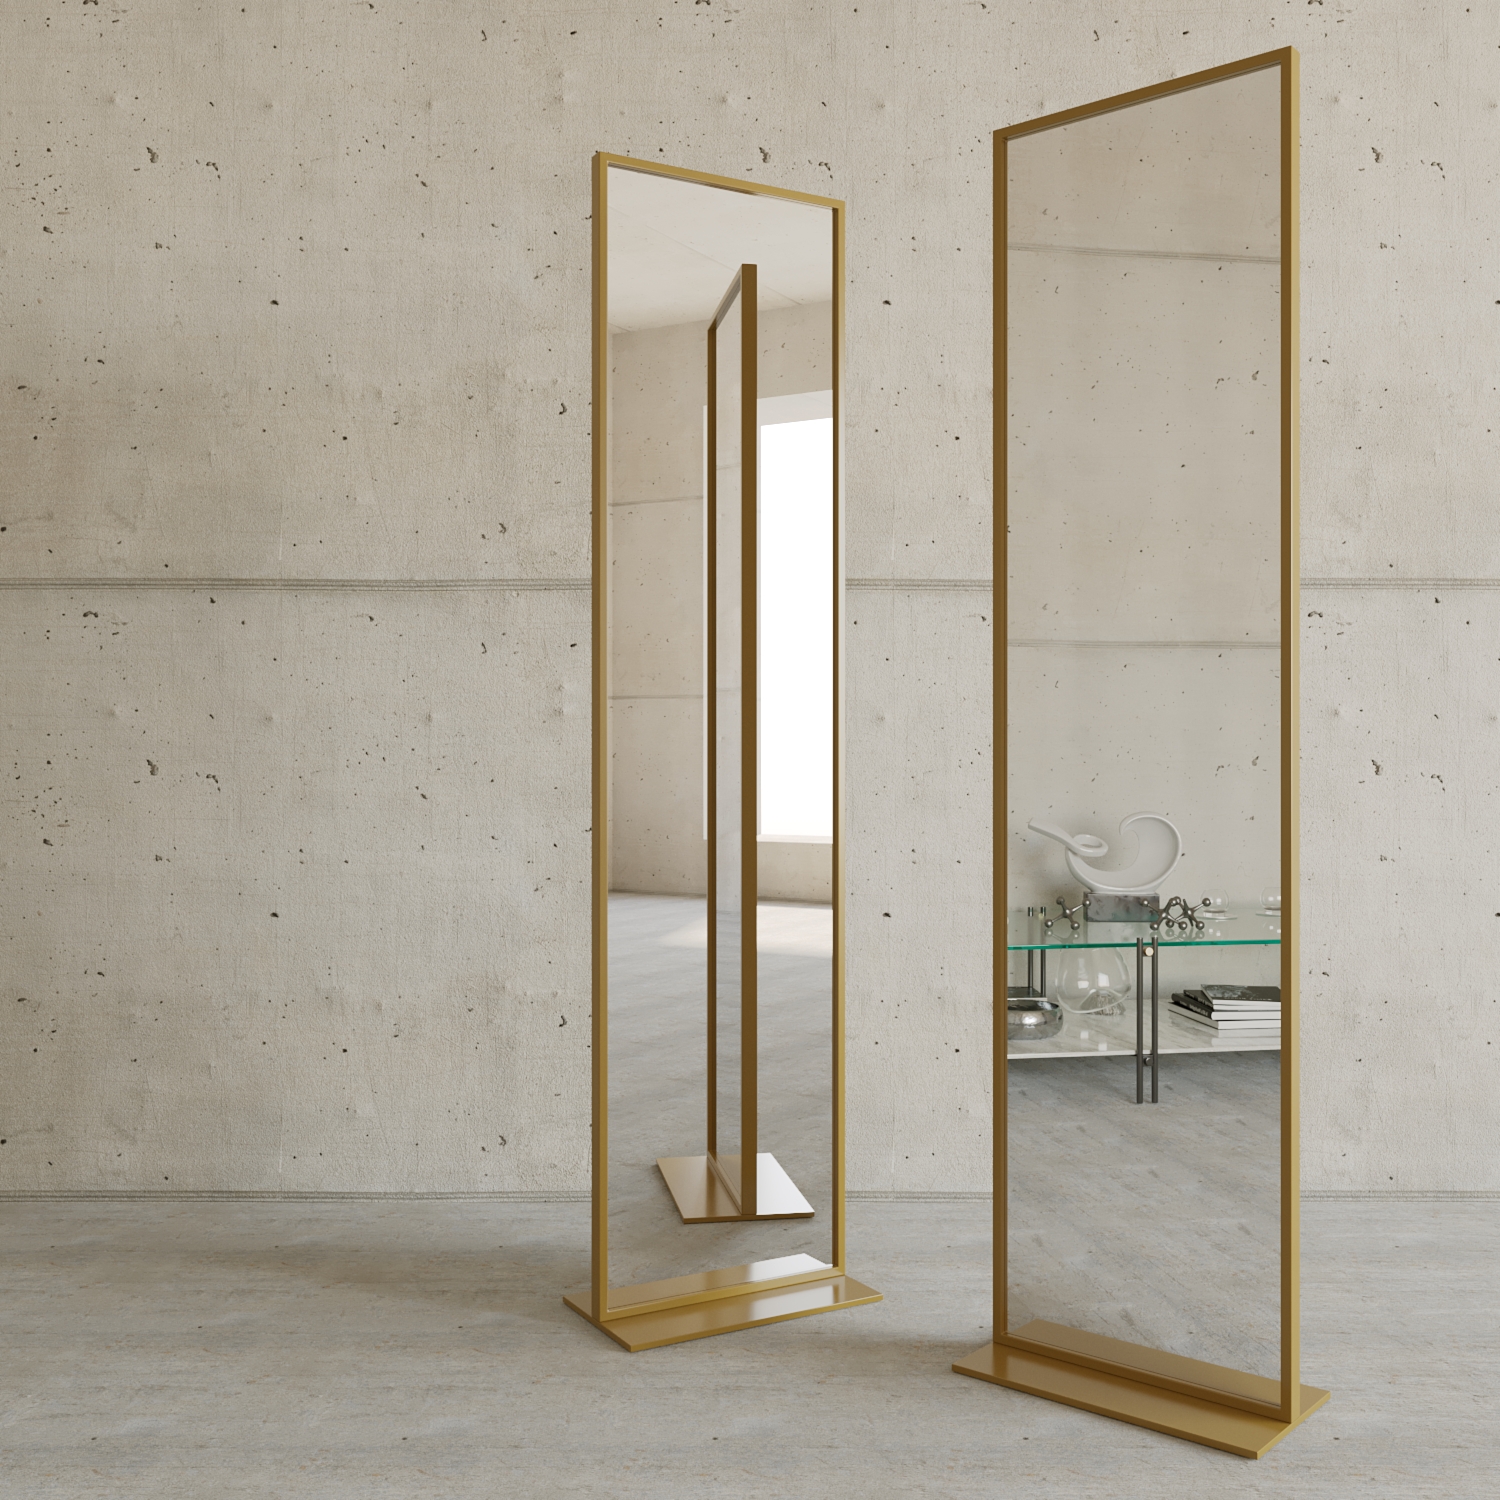 Напольные зеркала  The Furnish Дизайнерское напольное одностороннее зеркало zeliso-1 в металлической раме золотого цвета (genglass) золотой 45x185x25 см.